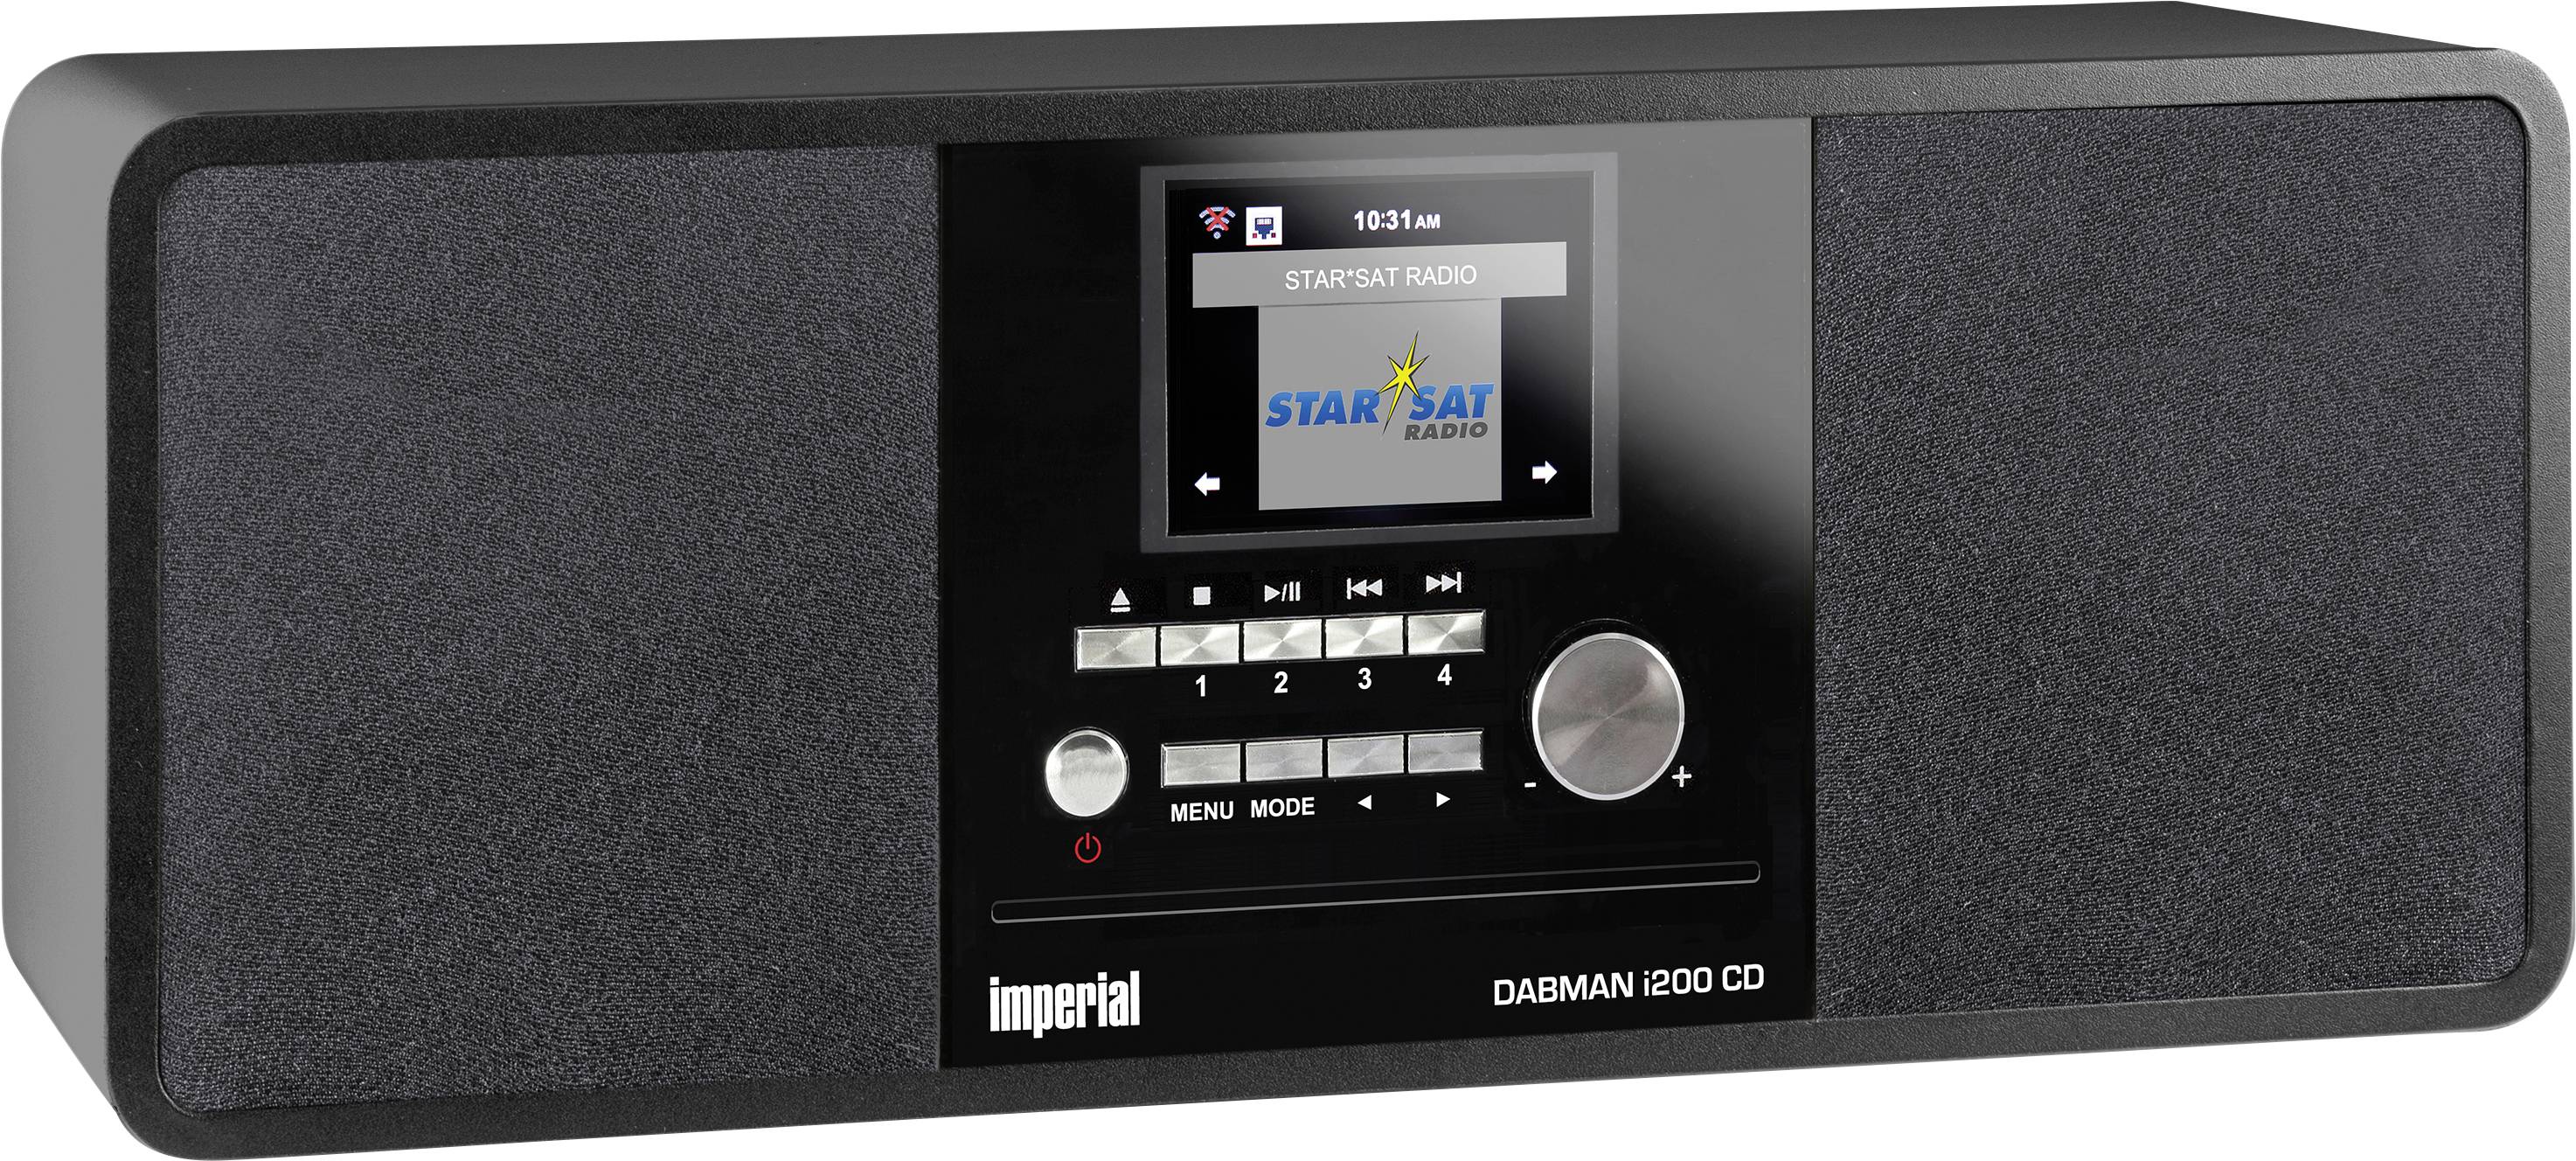 TELESTAR DIGITAL Imperial DABMAN i200 CD schwarz DAB+ Hybrid Internet FM Tune